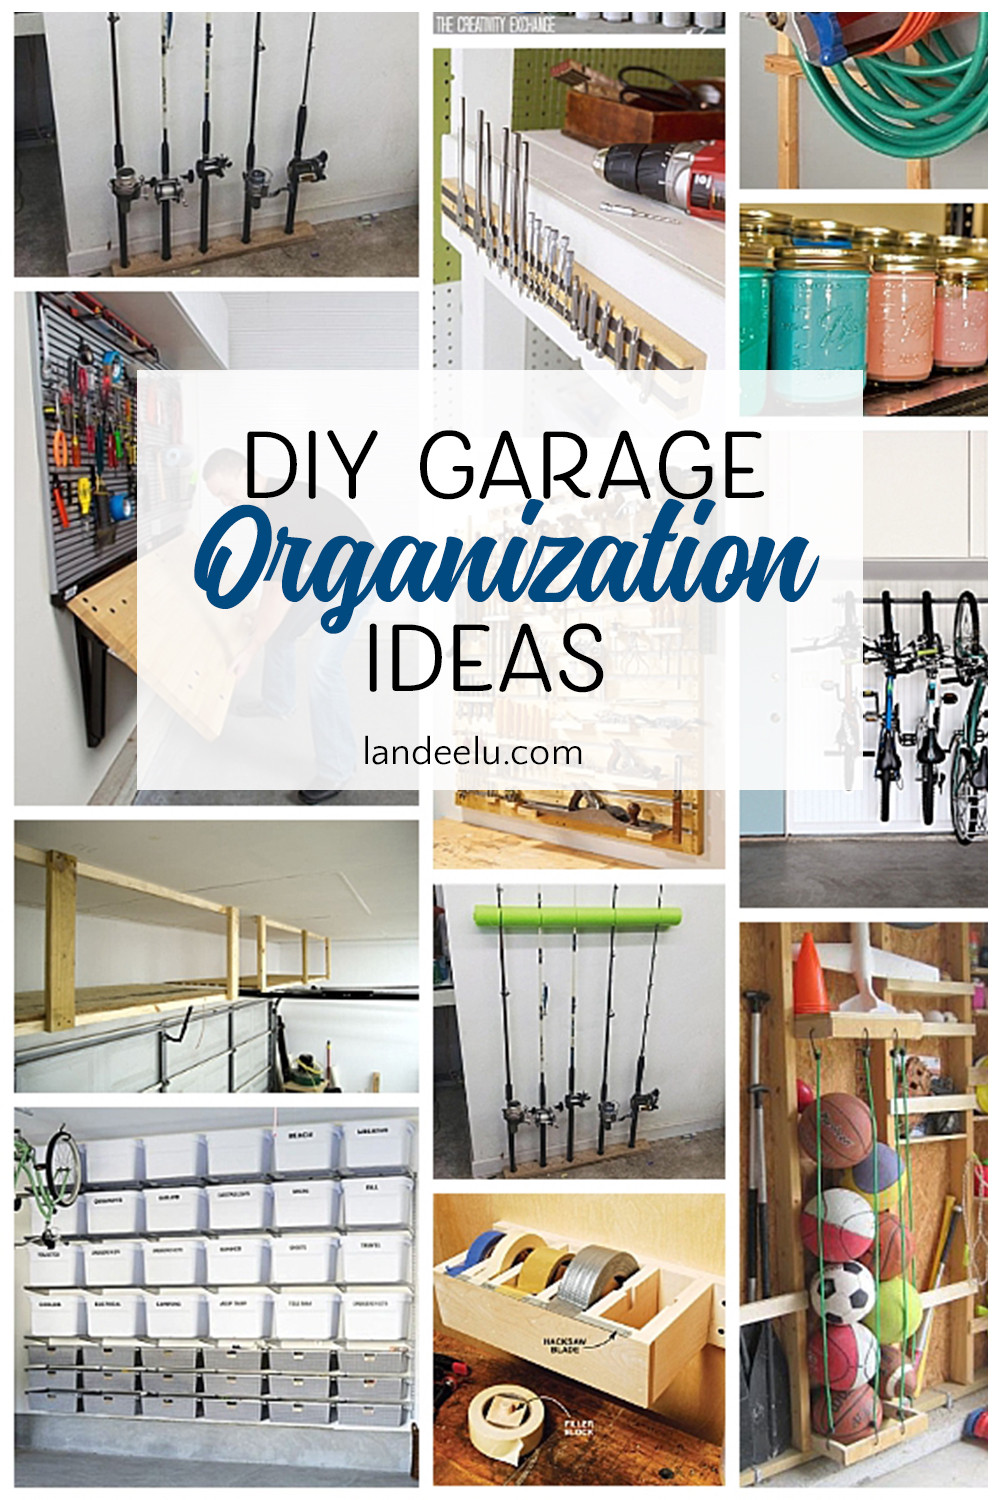 Garage Organization Ideas Diy
 Awesome DIY Garage Organization Ideas landeelu